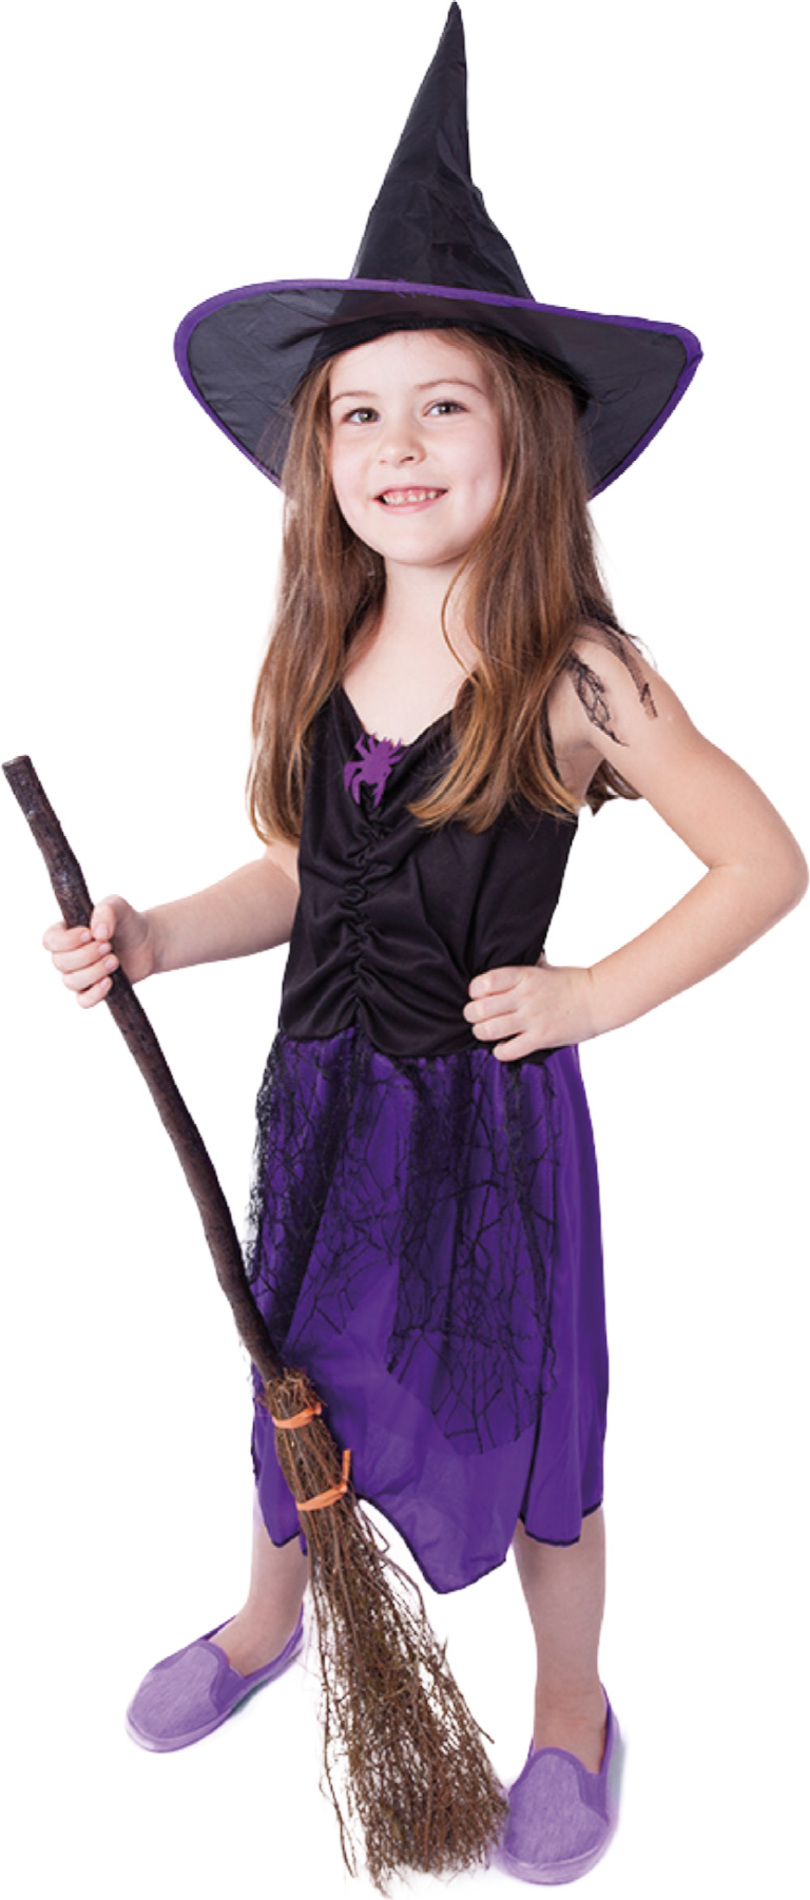 Dětský kostým čarodějnice fialová s kloboukem (M)